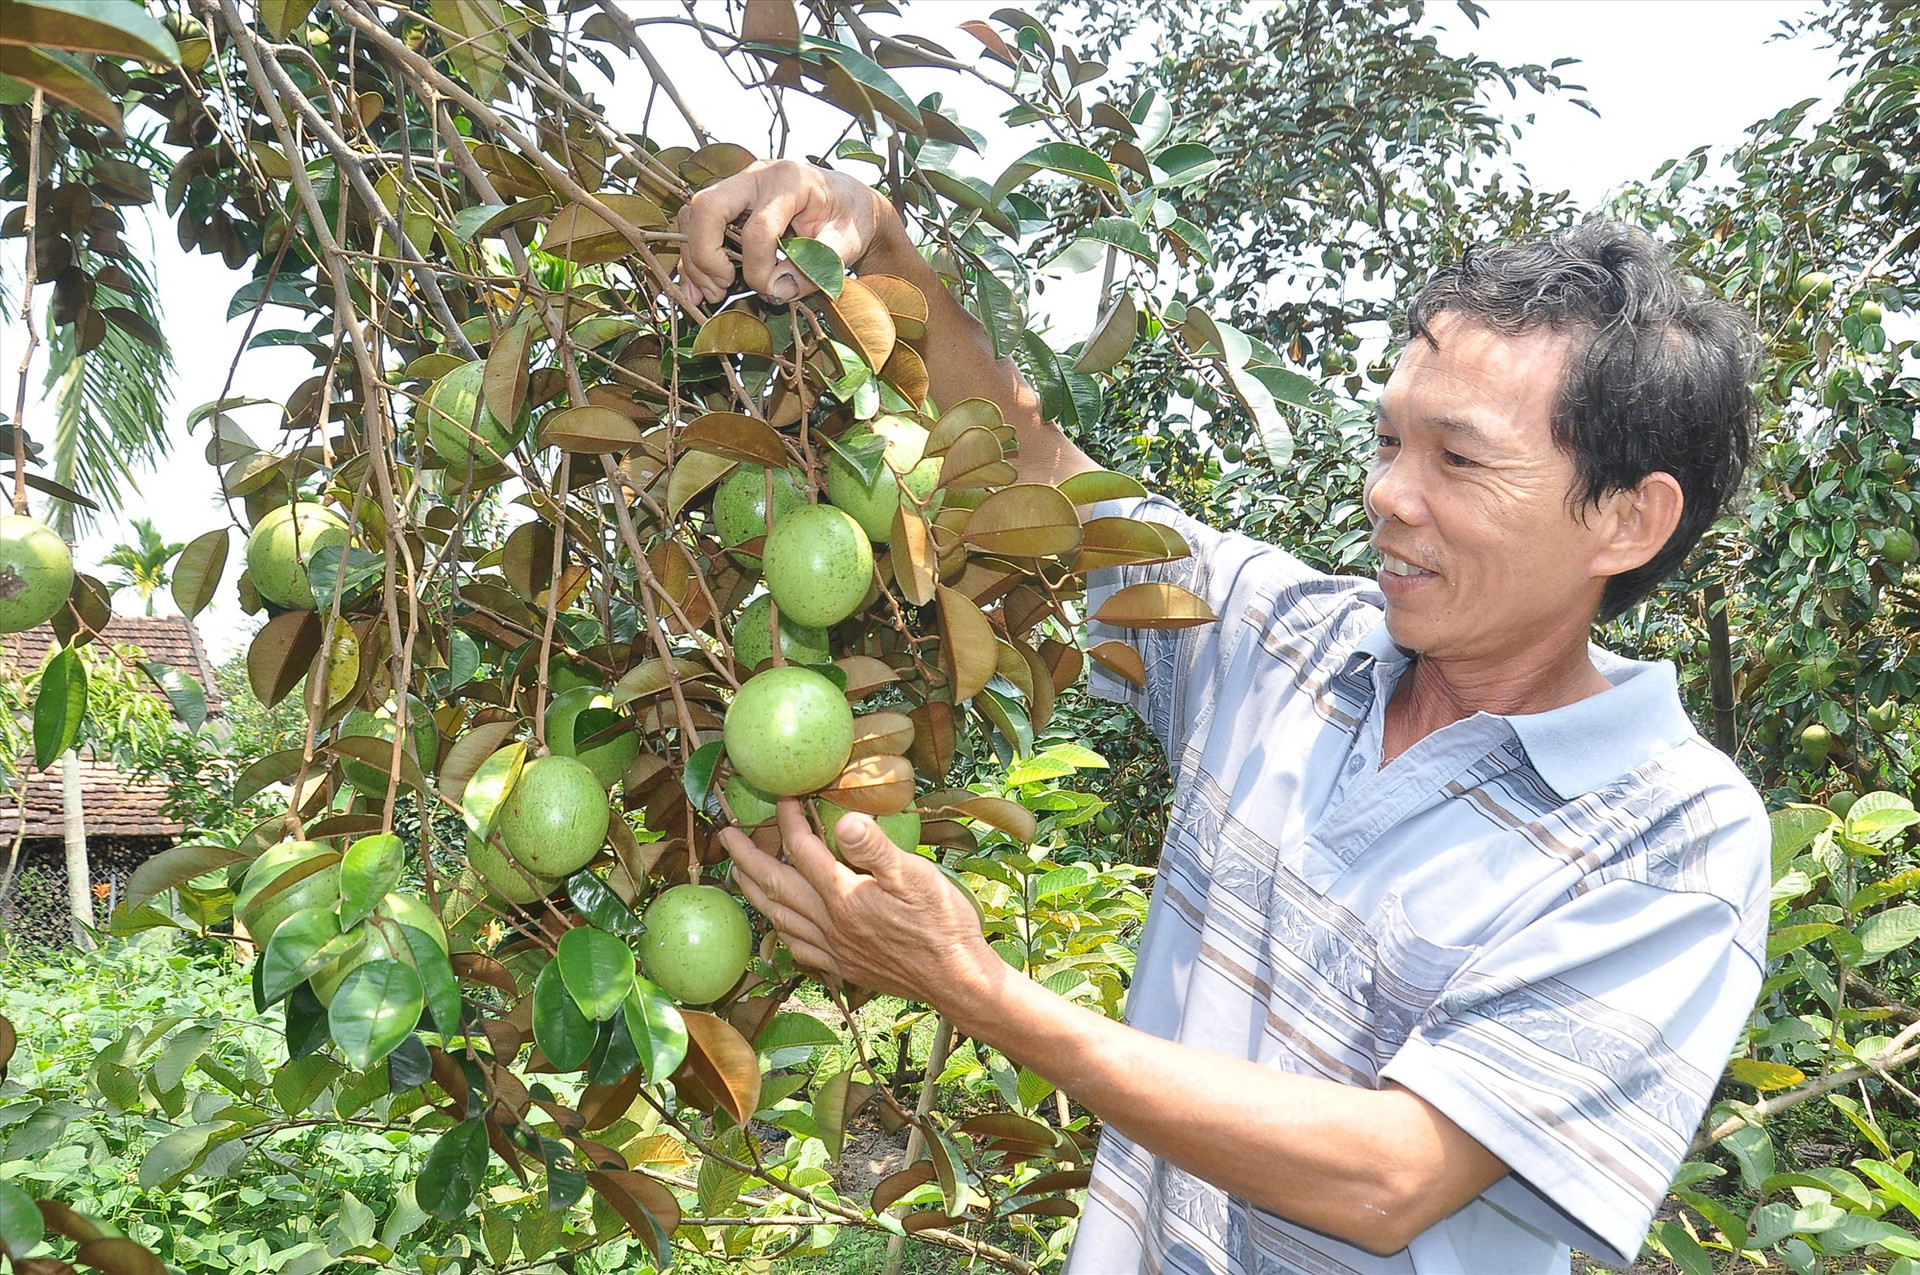 Từ chủ trương xây dựng NTM, cũng như nhiều hộ dân ở xã Tam Thái, ông Trương Văn Phú (thôn Hòa Bình) đã chủ động cải tạo vườn tạp trồng cây ăn quả cho giá trị kinh tế cao. Ảnh: VINH ANH